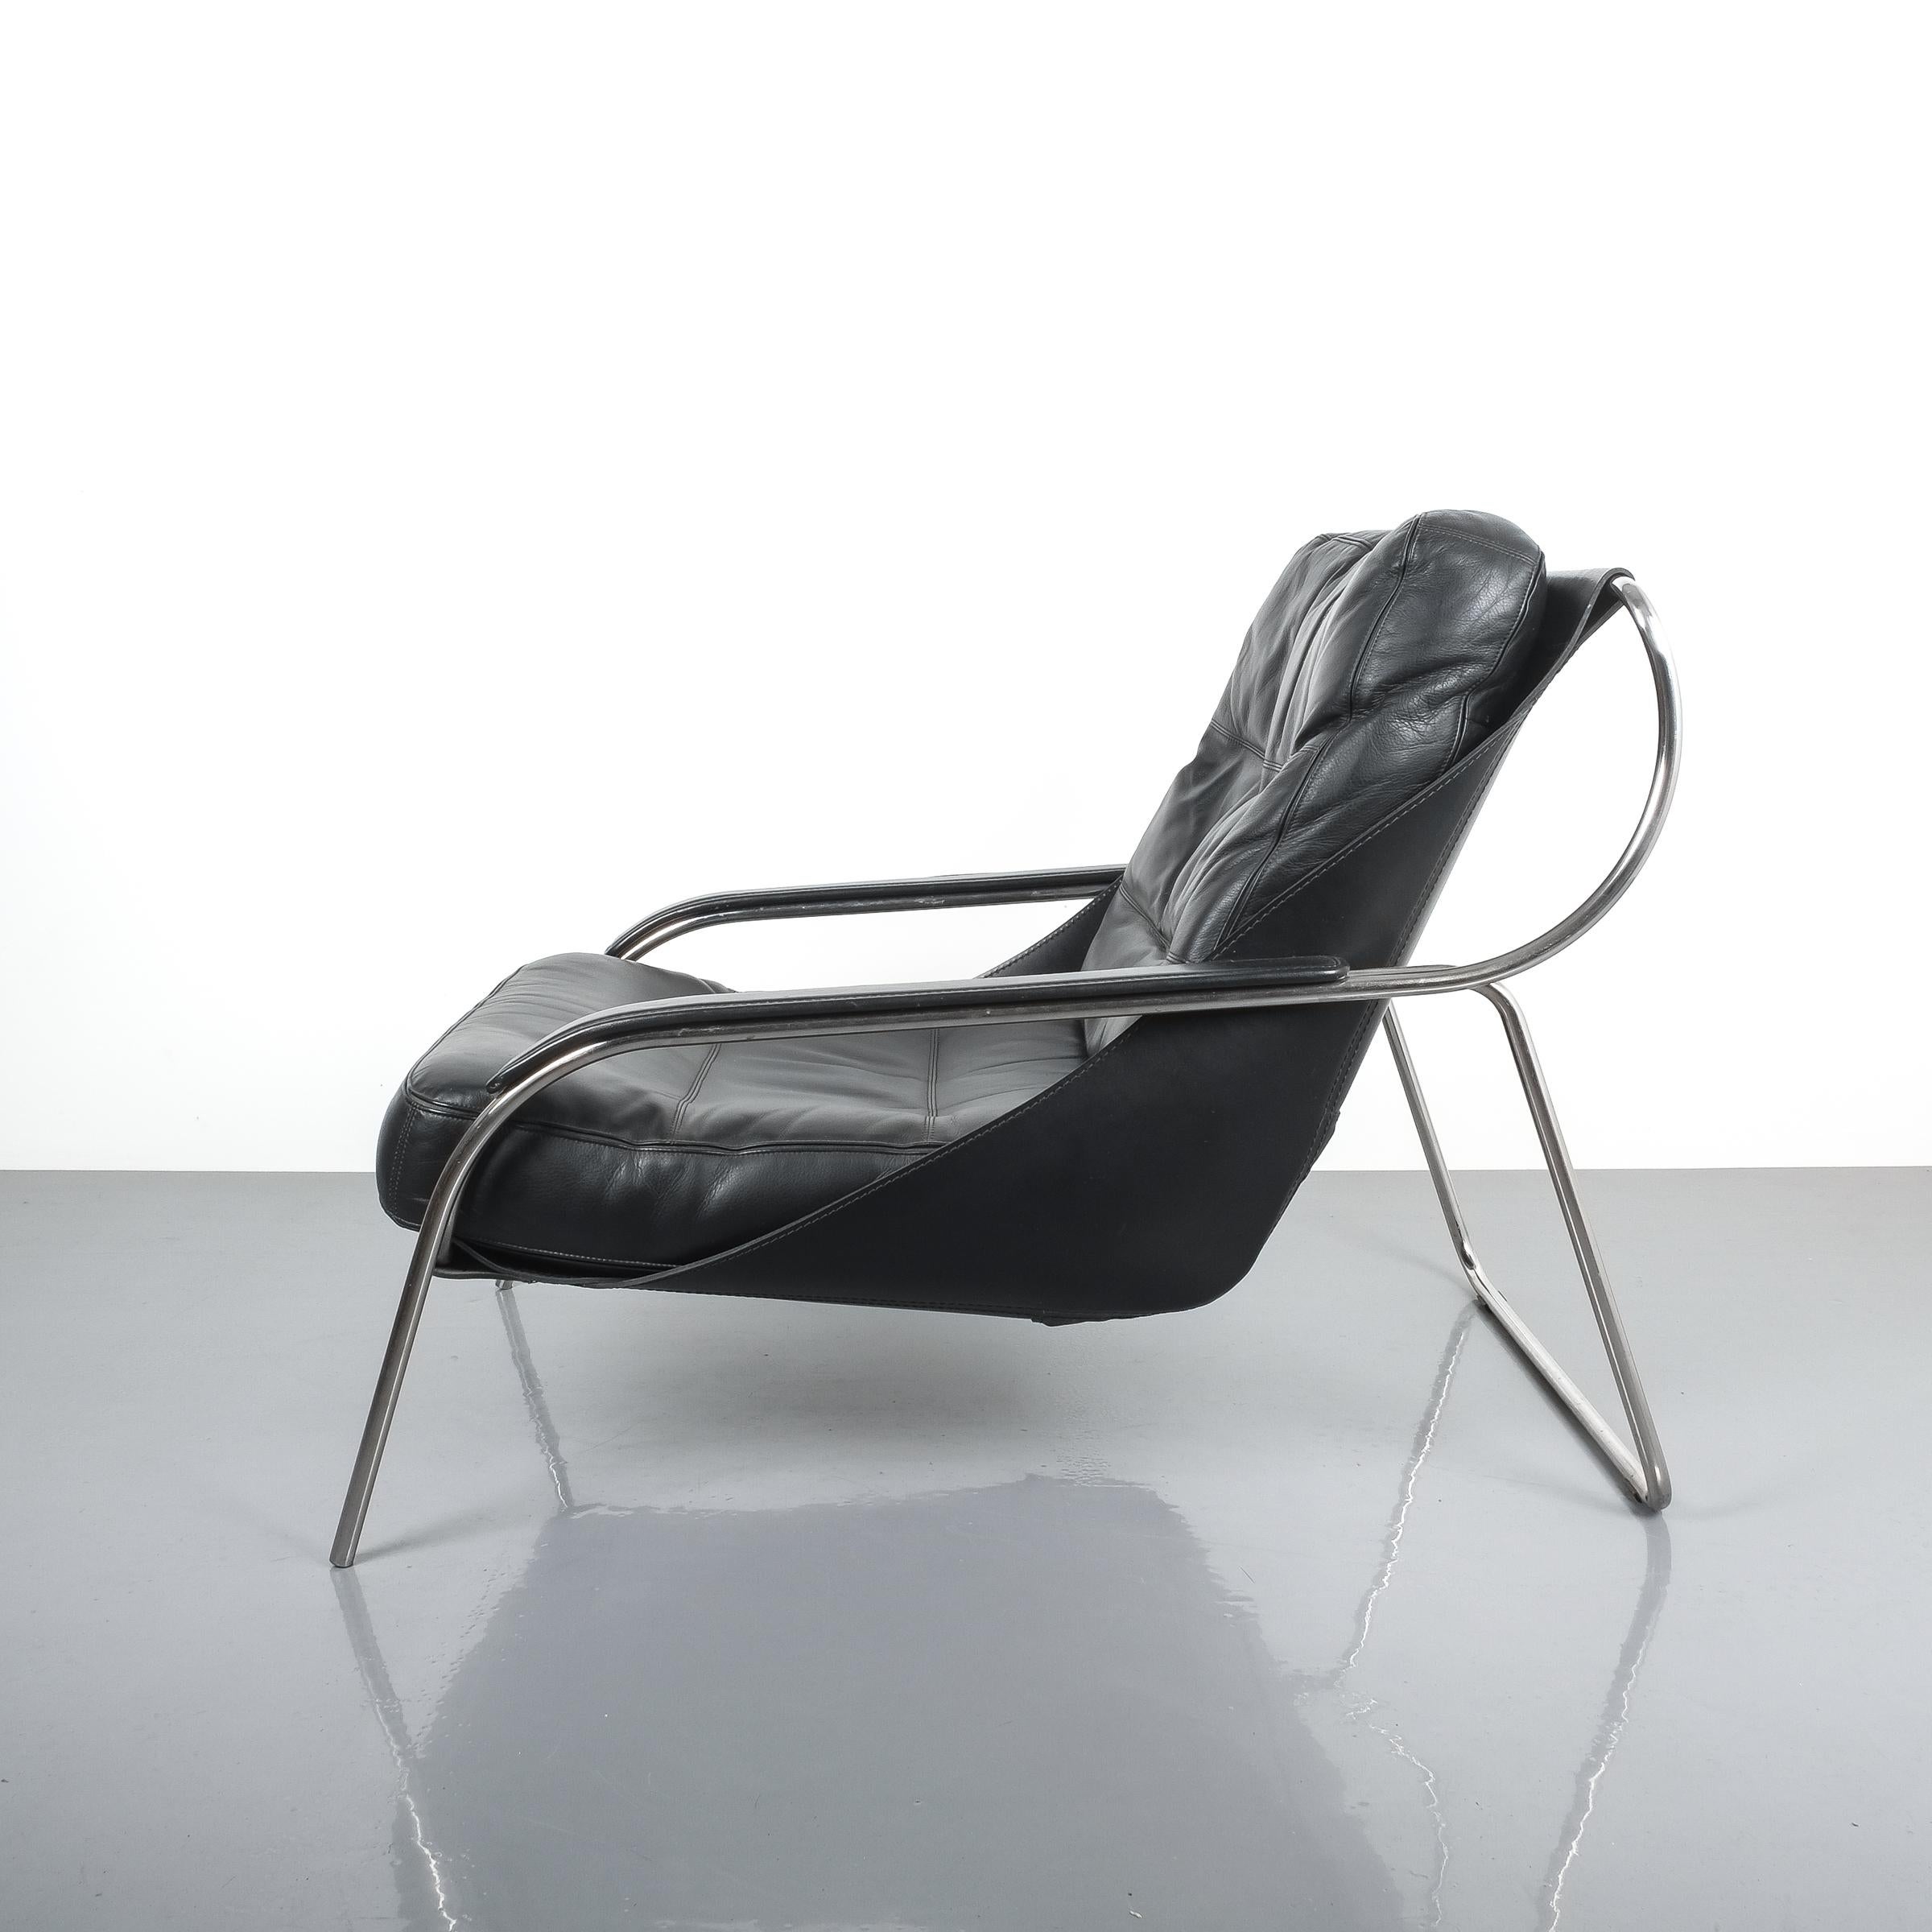 Élégante chaise Maggiolina de Zanotta conçue par Marco Zanuso, originellement dessinée en 1947. Production ultérieure. L'écharpe en cuir de vache supporte un grand coussin en cuir Nappa. Un cadre en acier inoxydable soutient cette chaise de salon